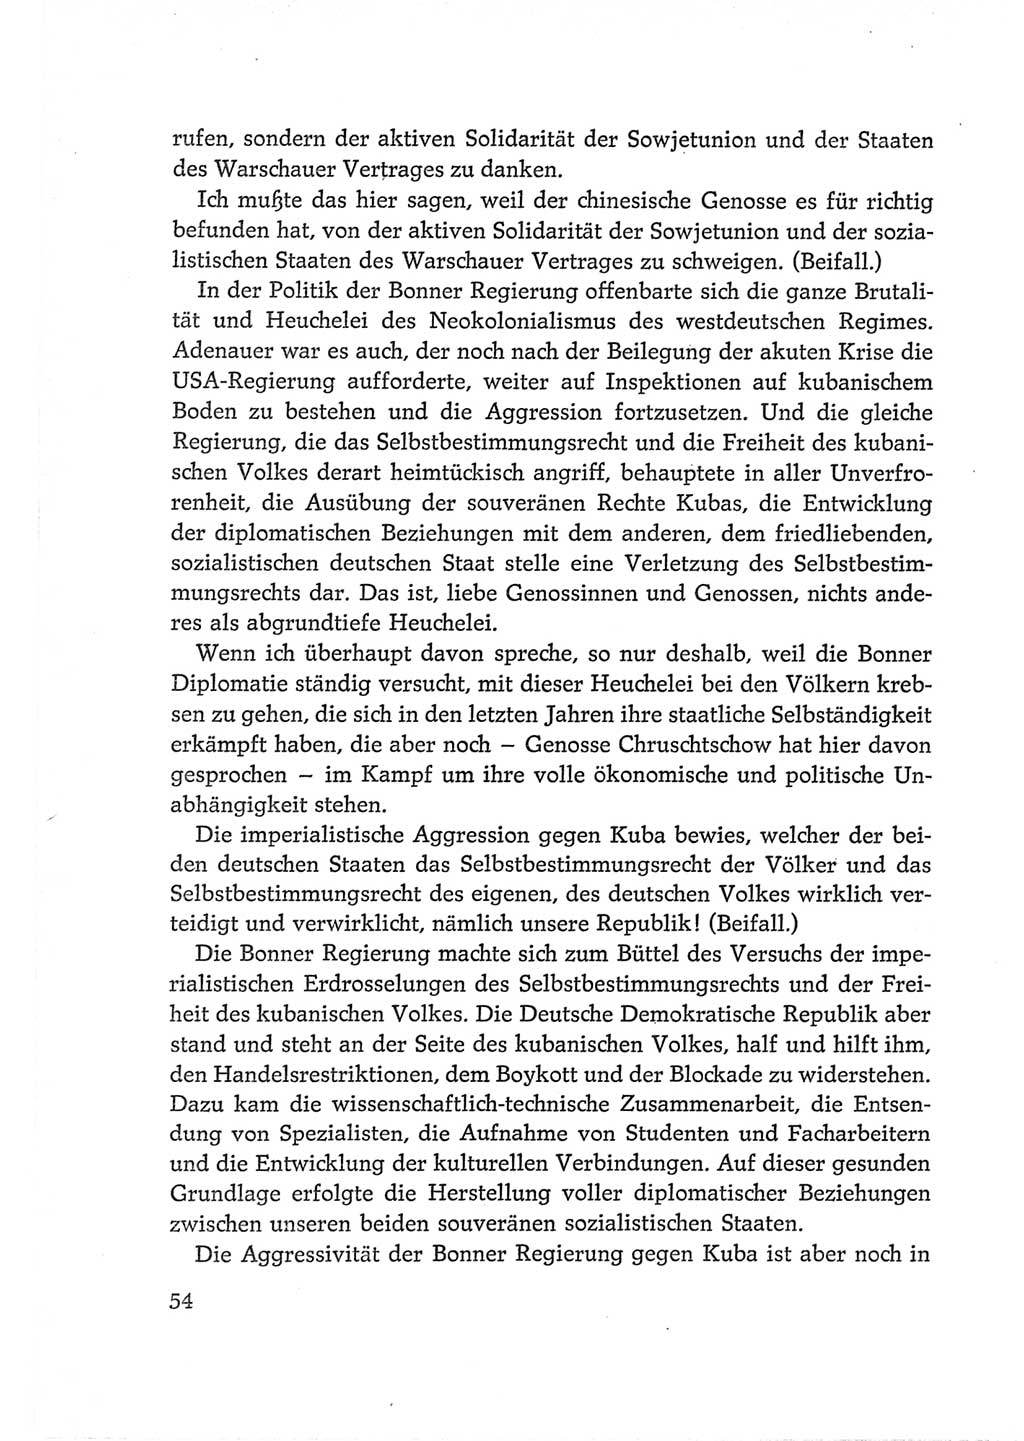 Protokoll der Verhandlungen des Ⅵ. Parteitages der Sozialistischen Einheitspartei Deutschlands (SED) [Deutsche Demokratische Republik (DDR)] 1963, Band Ⅱ, Seite 54 (Prot. Verh. Ⅵ. PT SED DDR 1963, Bd. Ⅱ, S. 54)